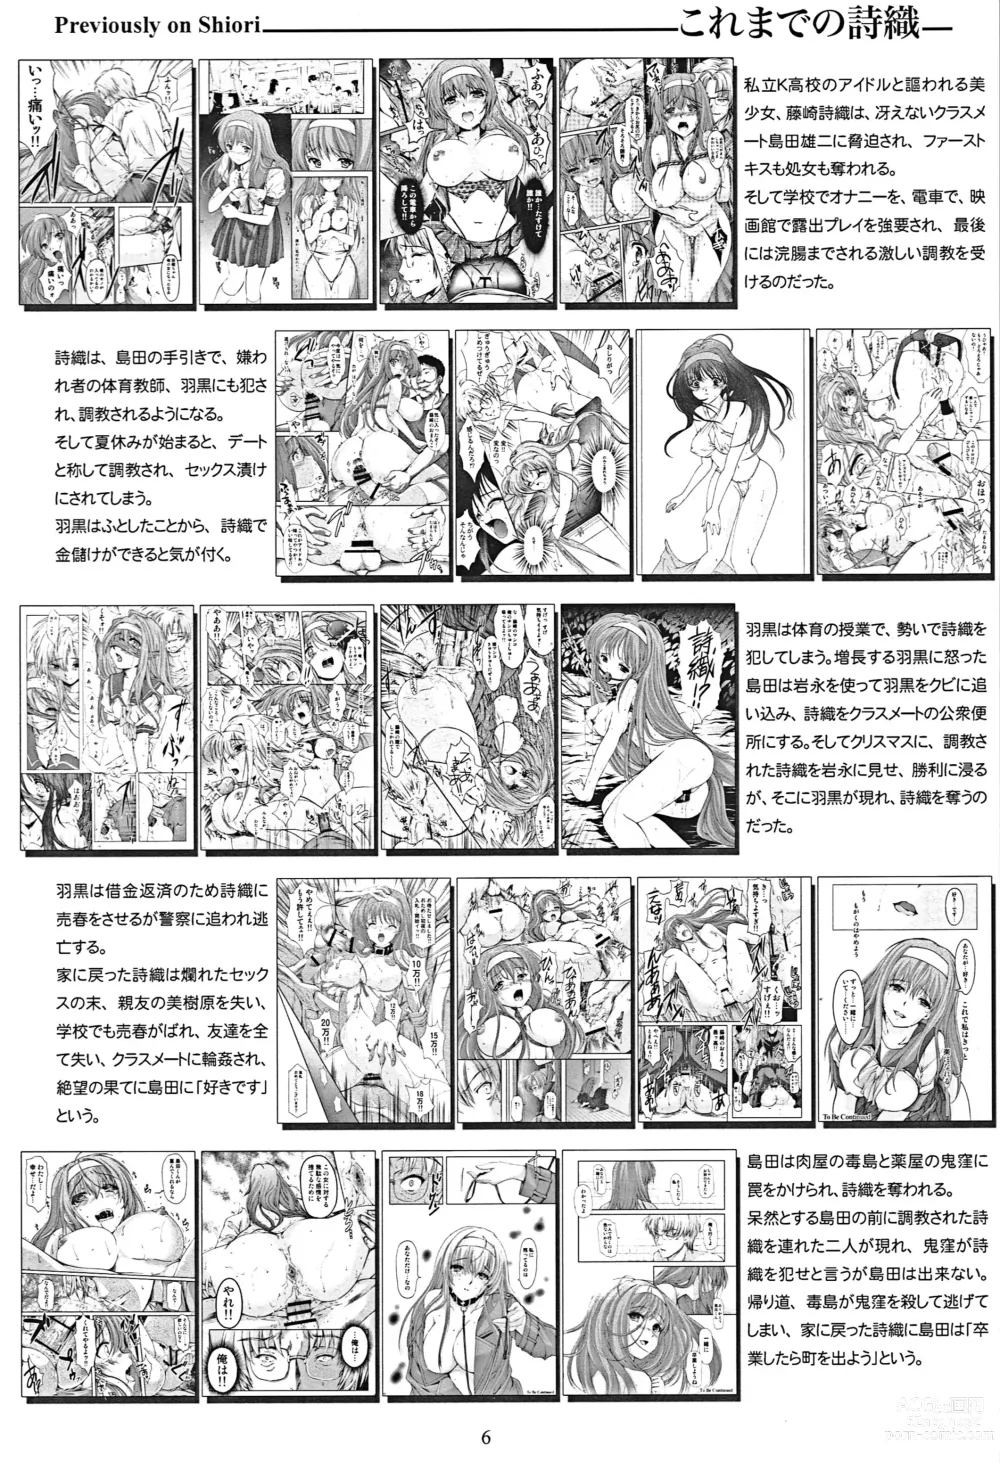 Page 6 of doujinshi Shiori Dai-Nijuunana-Shou Kago no Naka no Melancholic - Shiori Volume 27 The Melancholic In The Cage